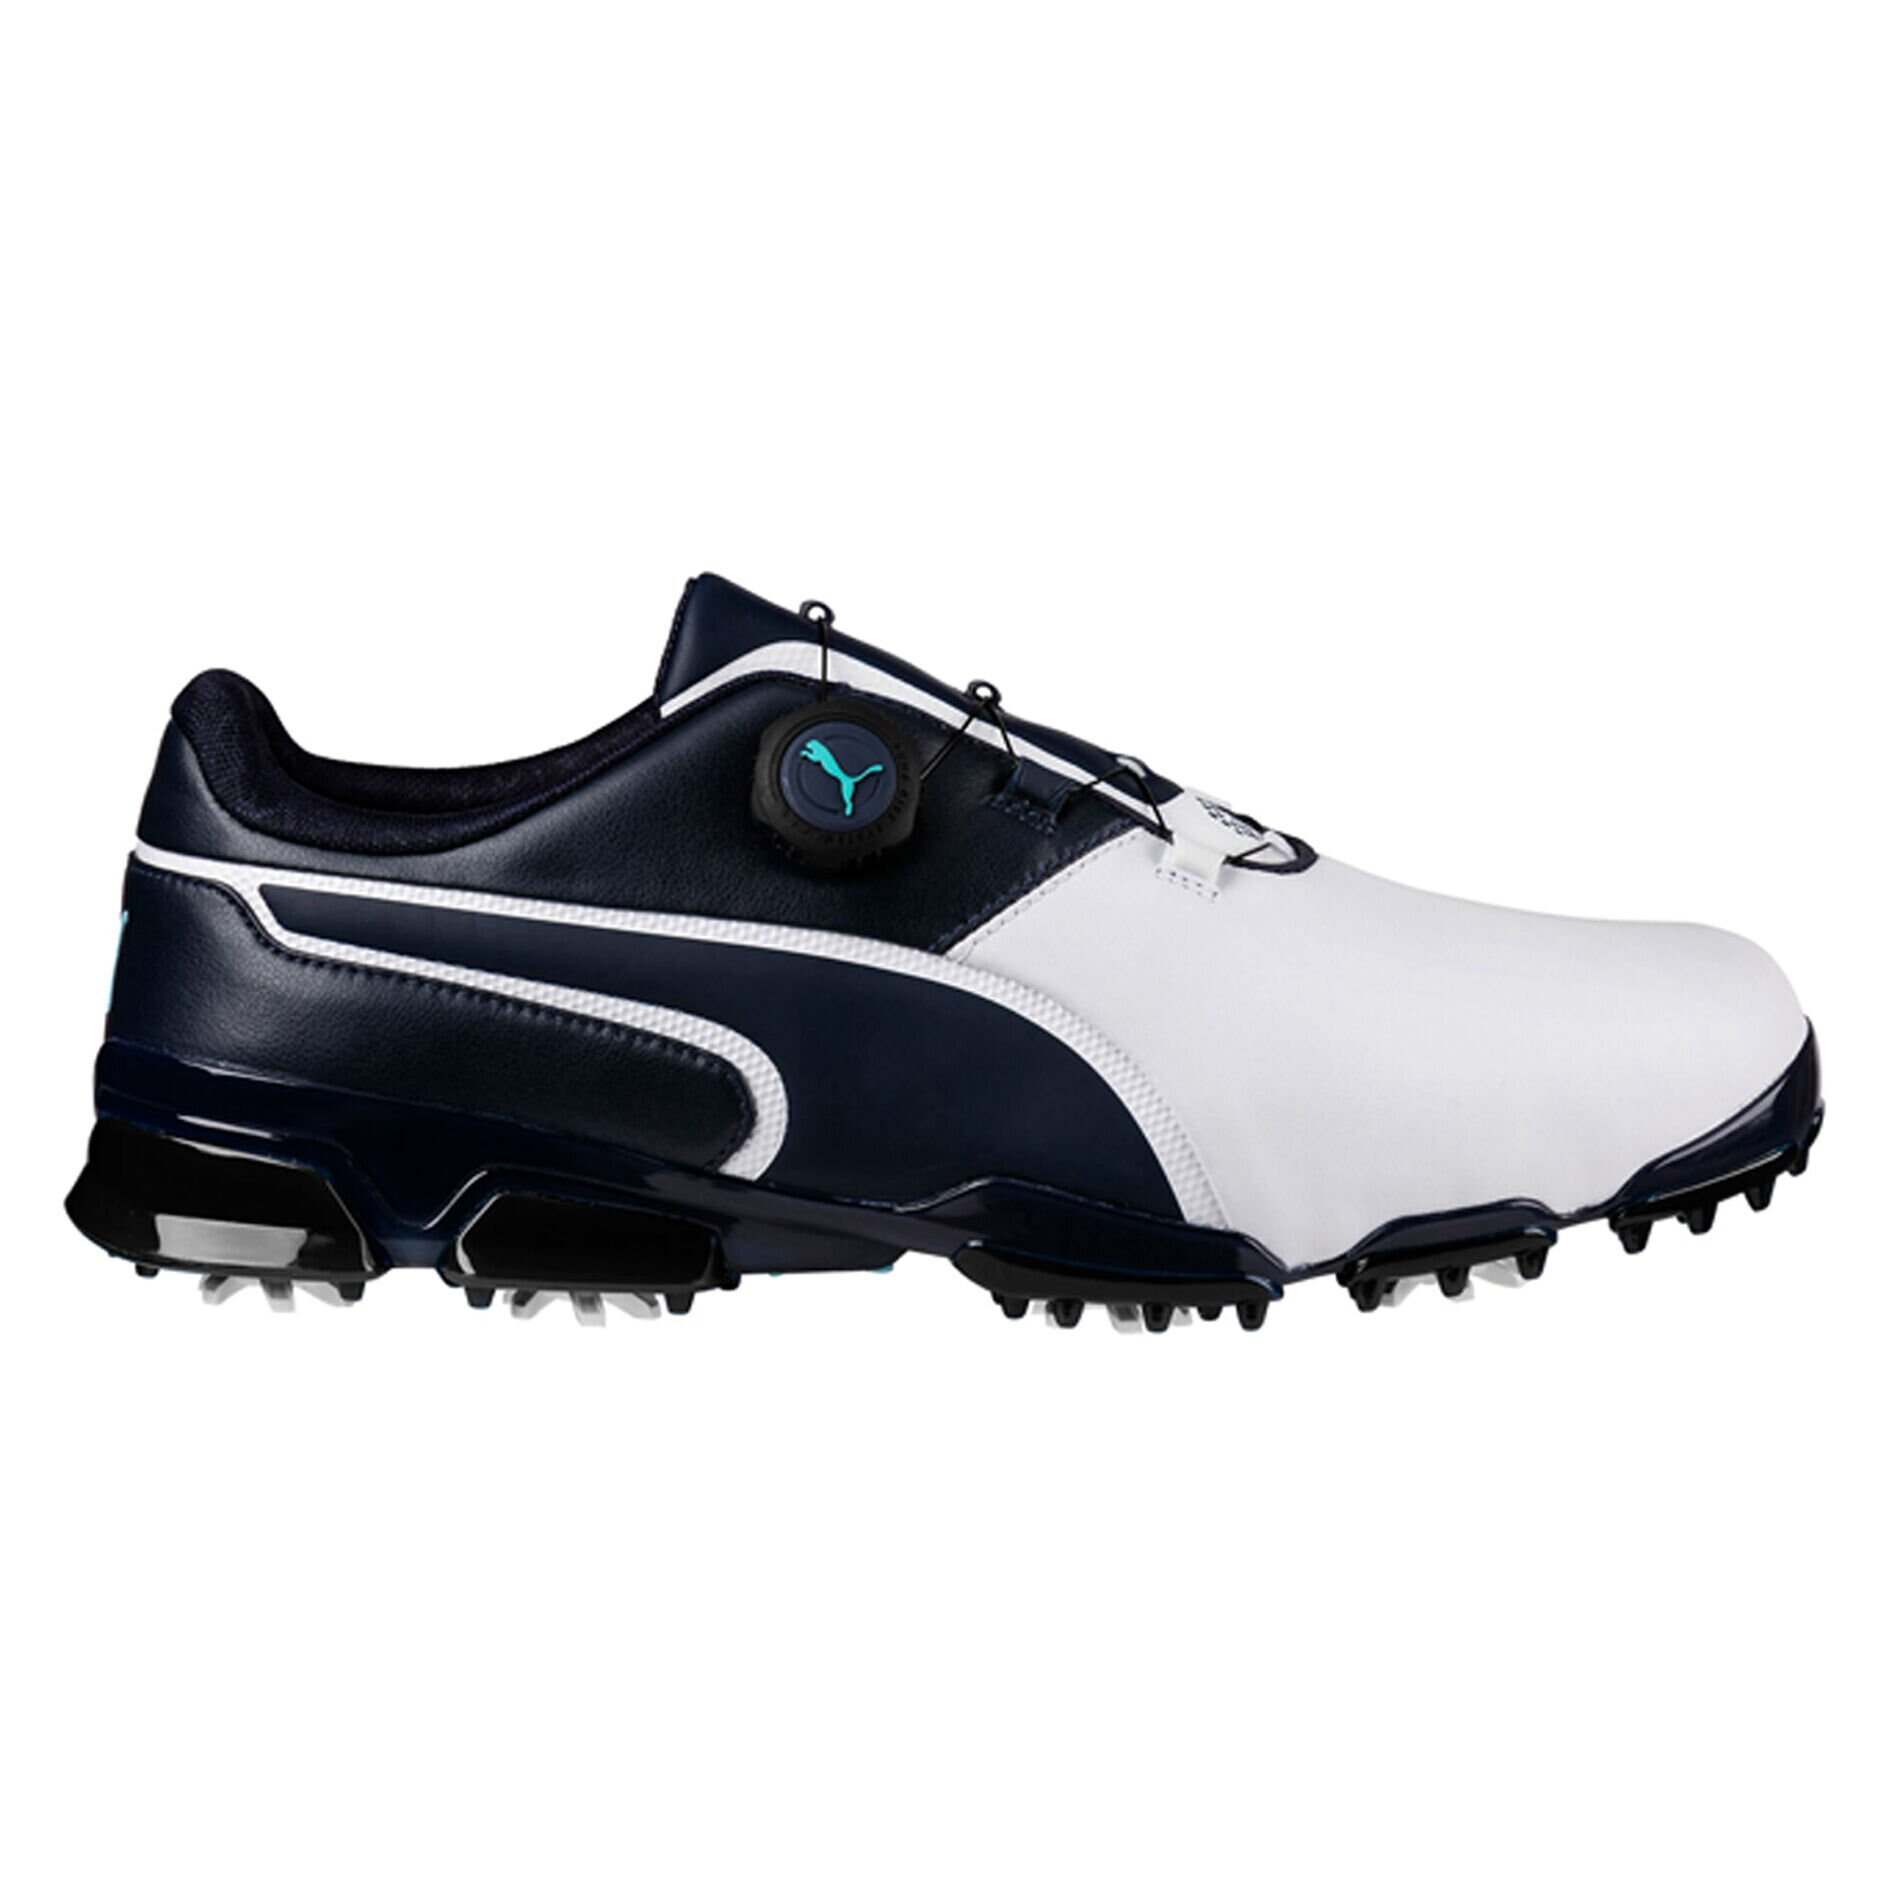 puma titantour ignite premium disc golf shoes